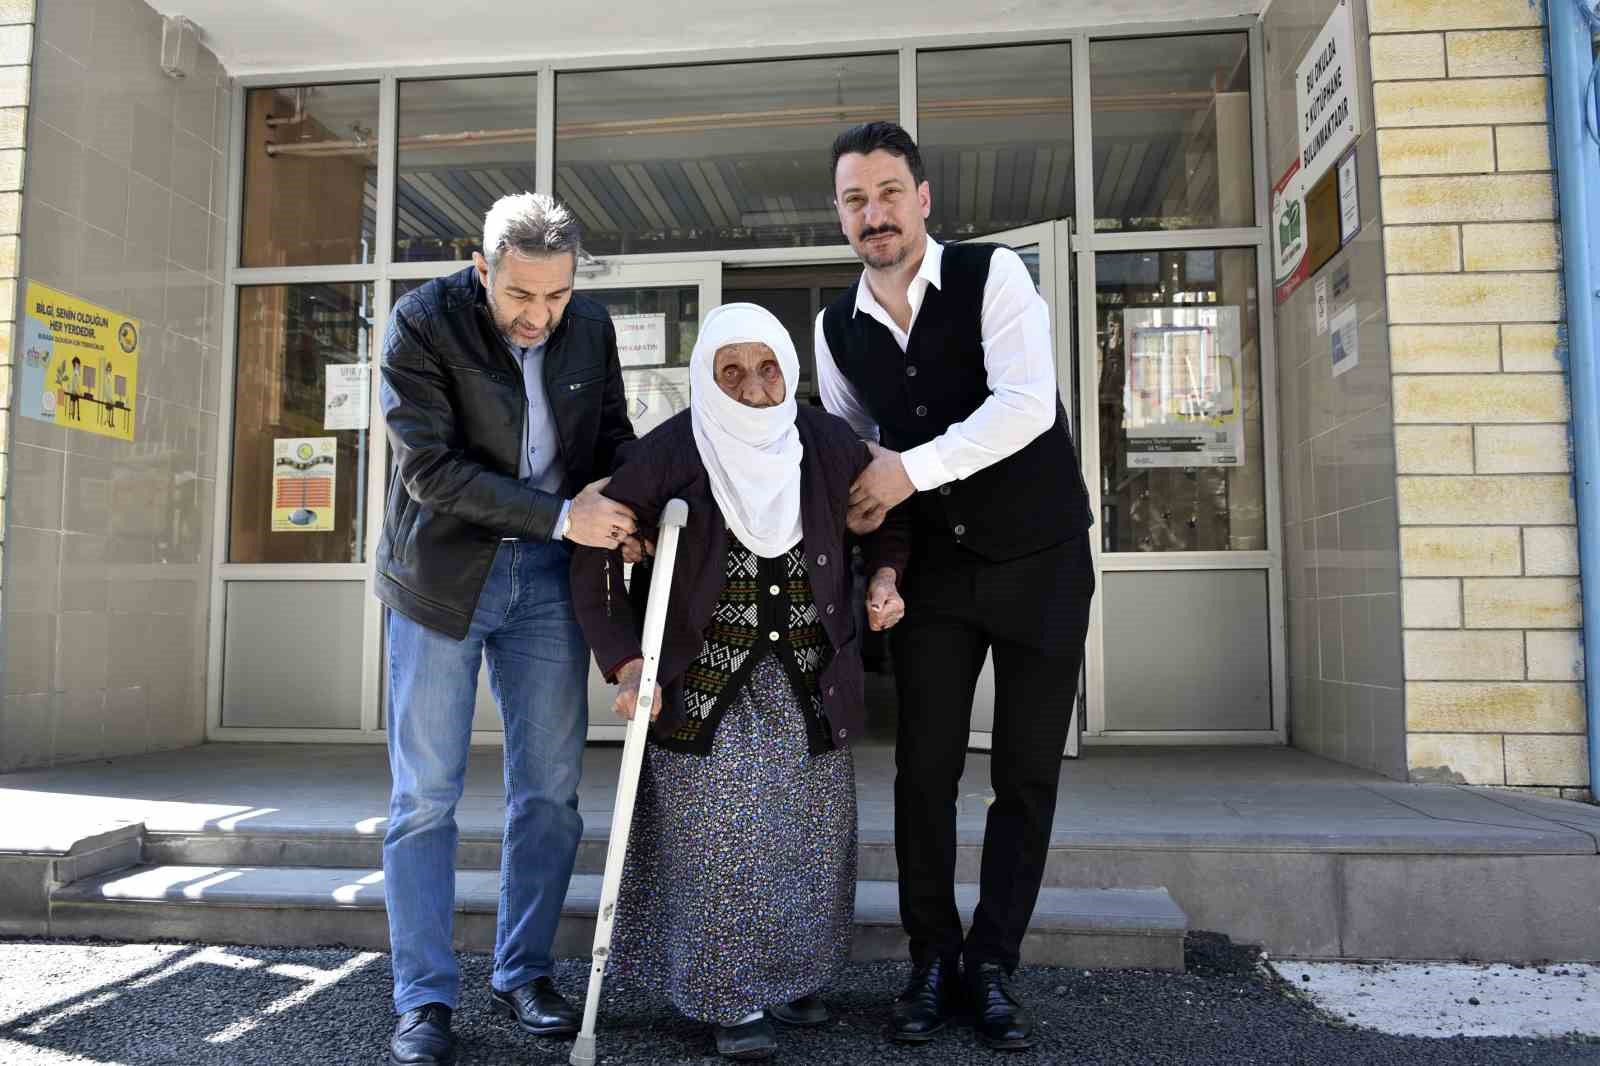 112 yaşındaki Güllü nine oy kullanmak üzere koltuk değnekleri ile sandık başına geldi